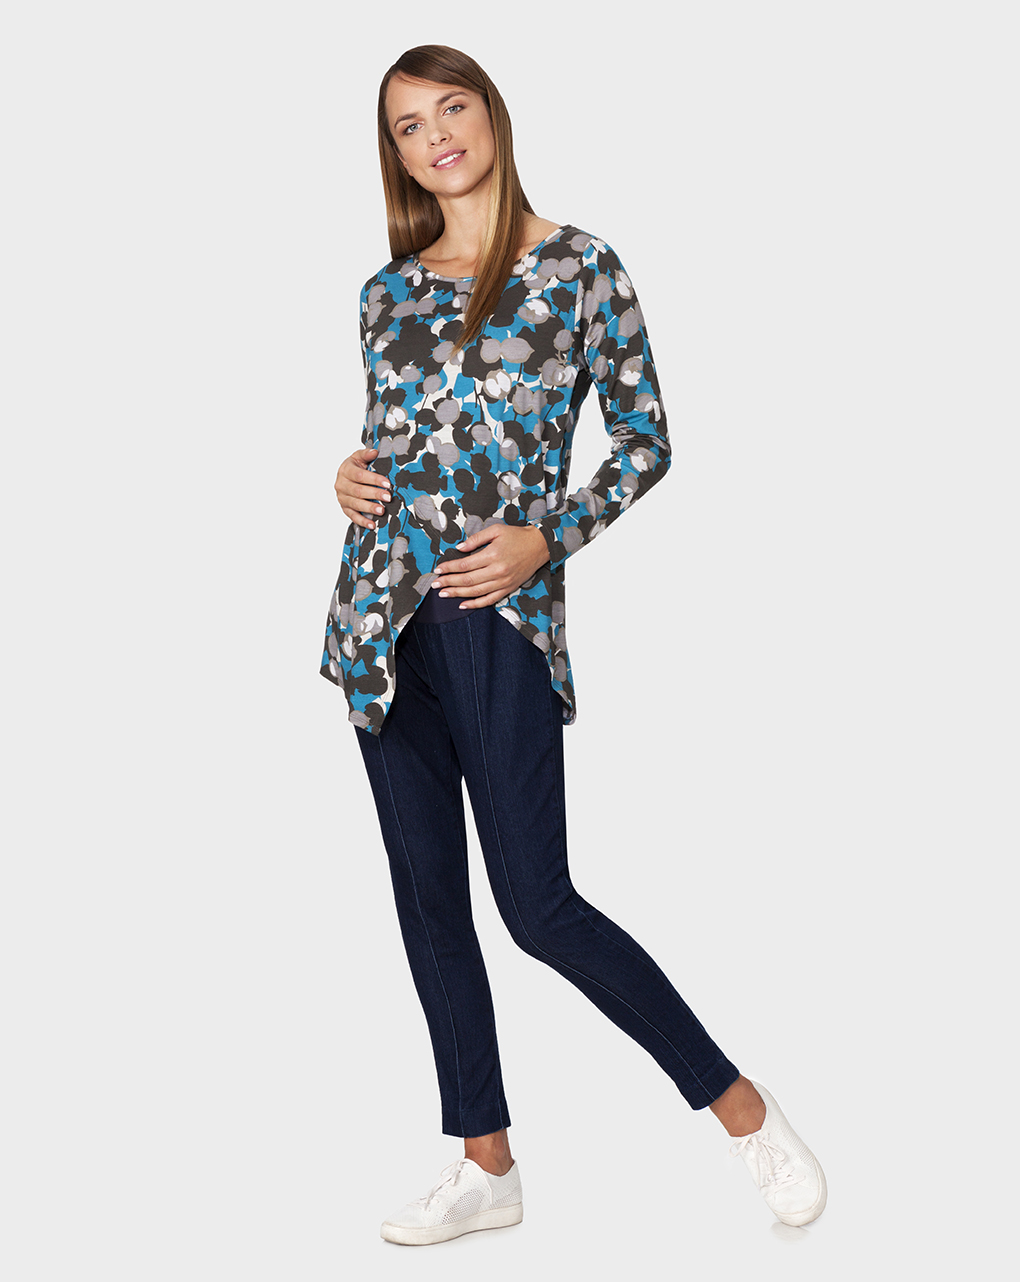 γυναικεία μπλούζα θηλασμού γαλάζια με στάμπα λουλούδια - Prénatal